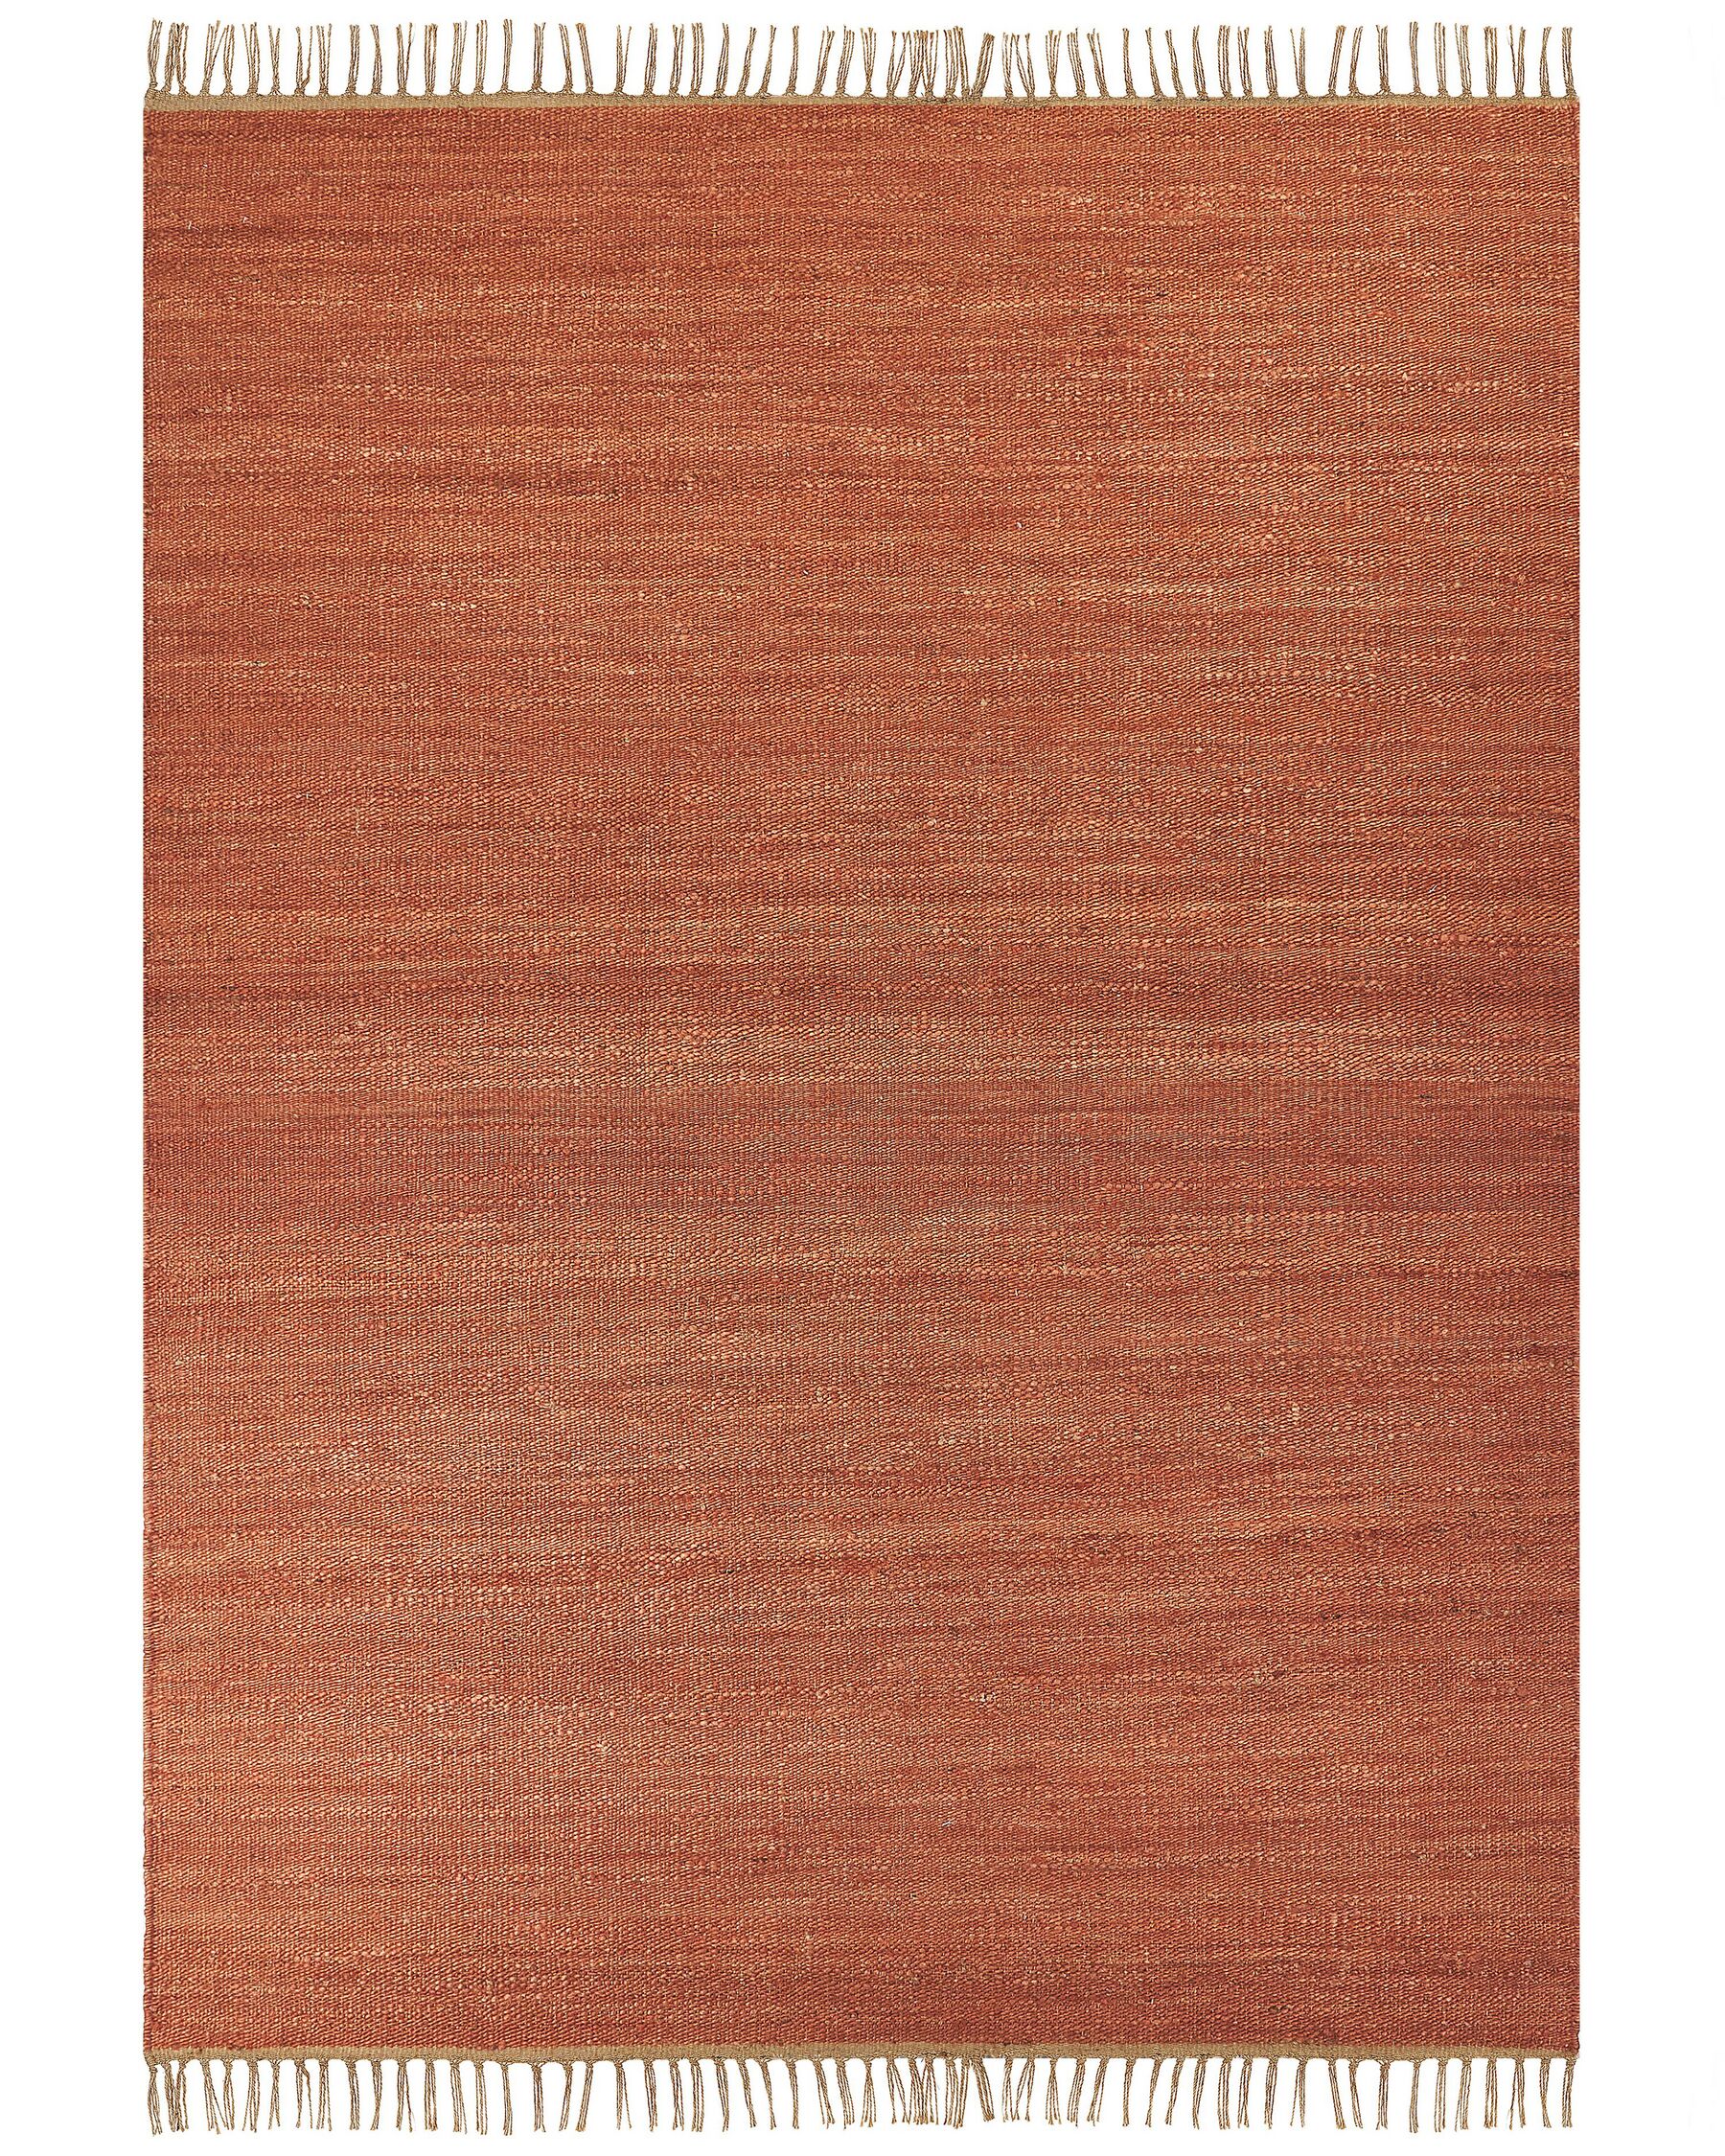 Tappeto iuta rosso chiaro e marrone 160 x 230 cm LUNIA_846248